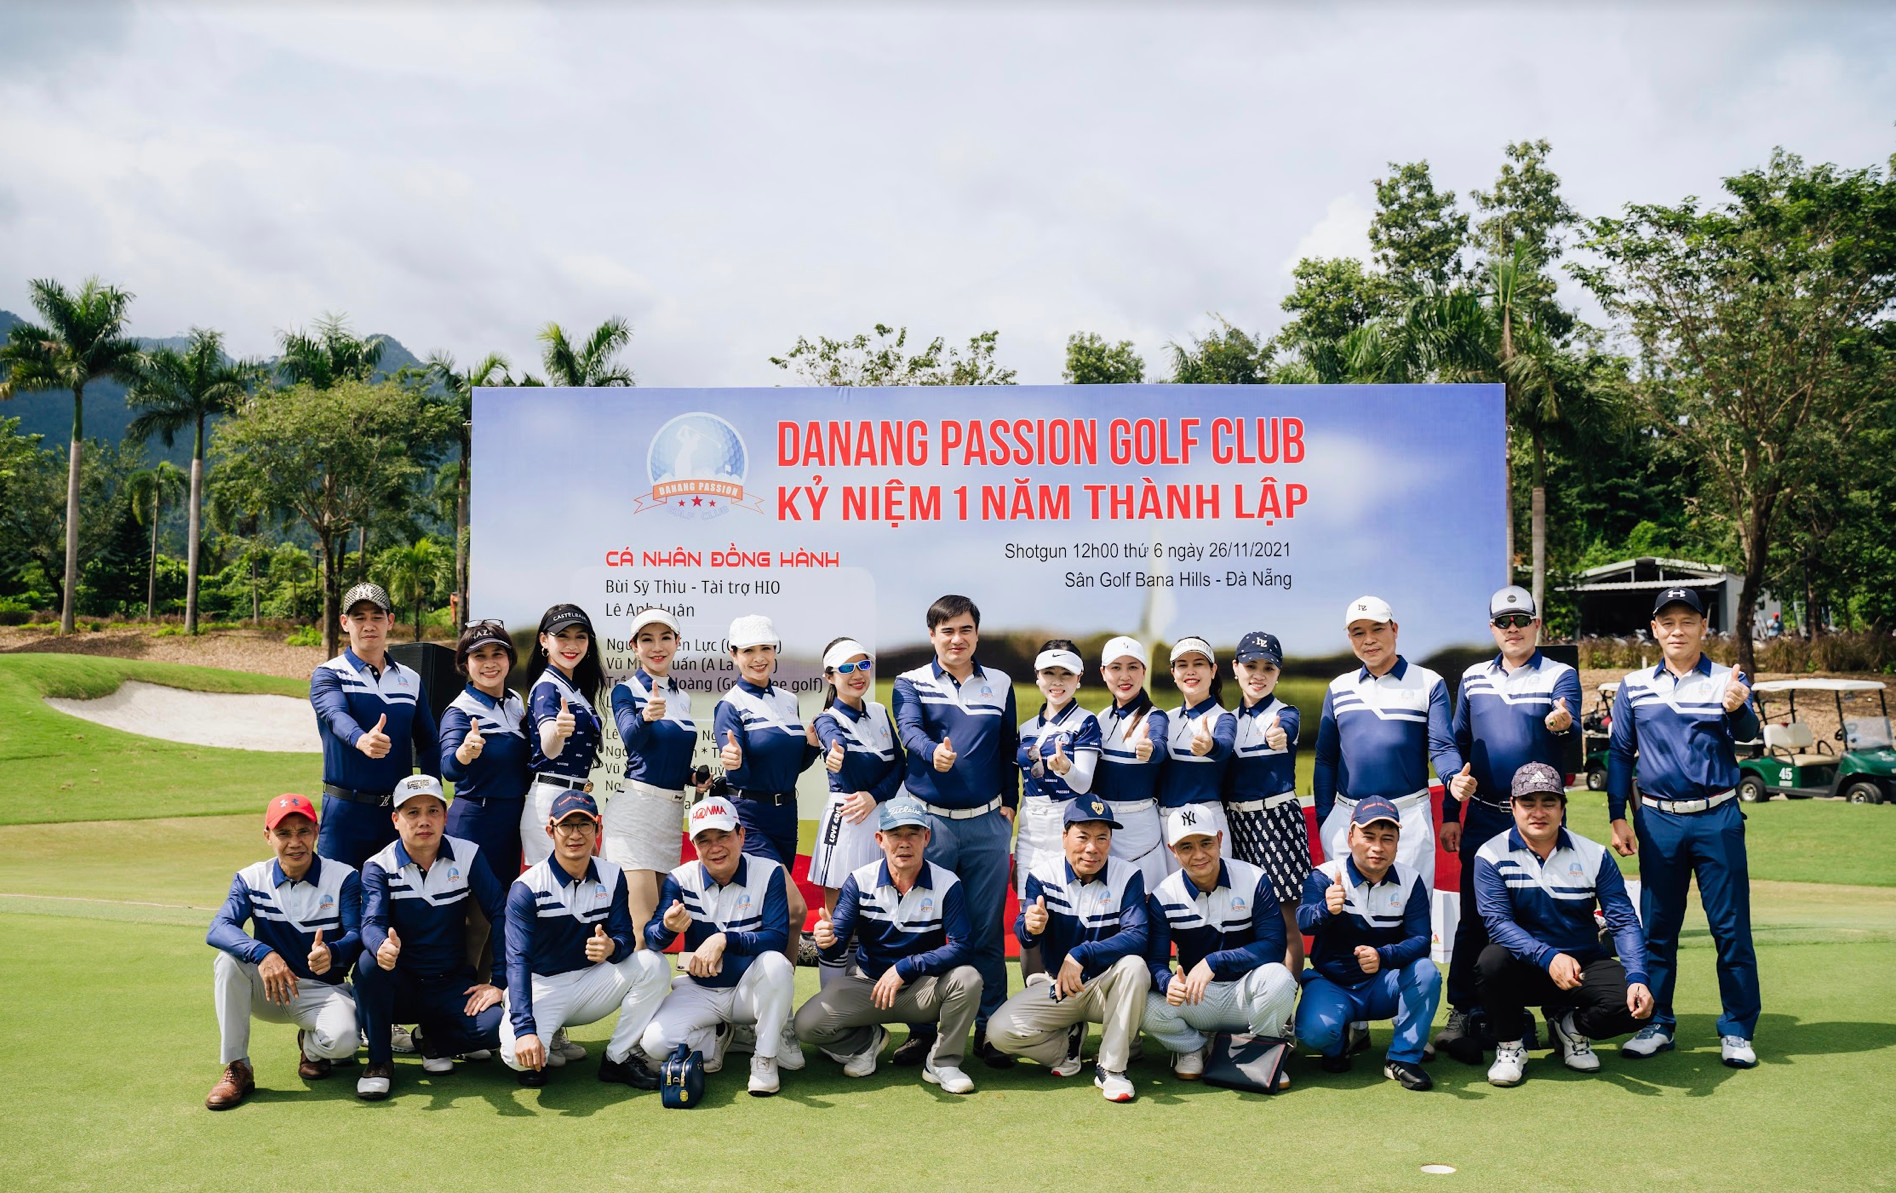 CLB Passion Golf Đà Nẵng kỷ niệm thành lập 1 năm tại sân Golf Bà Nà - Ảnh 3.